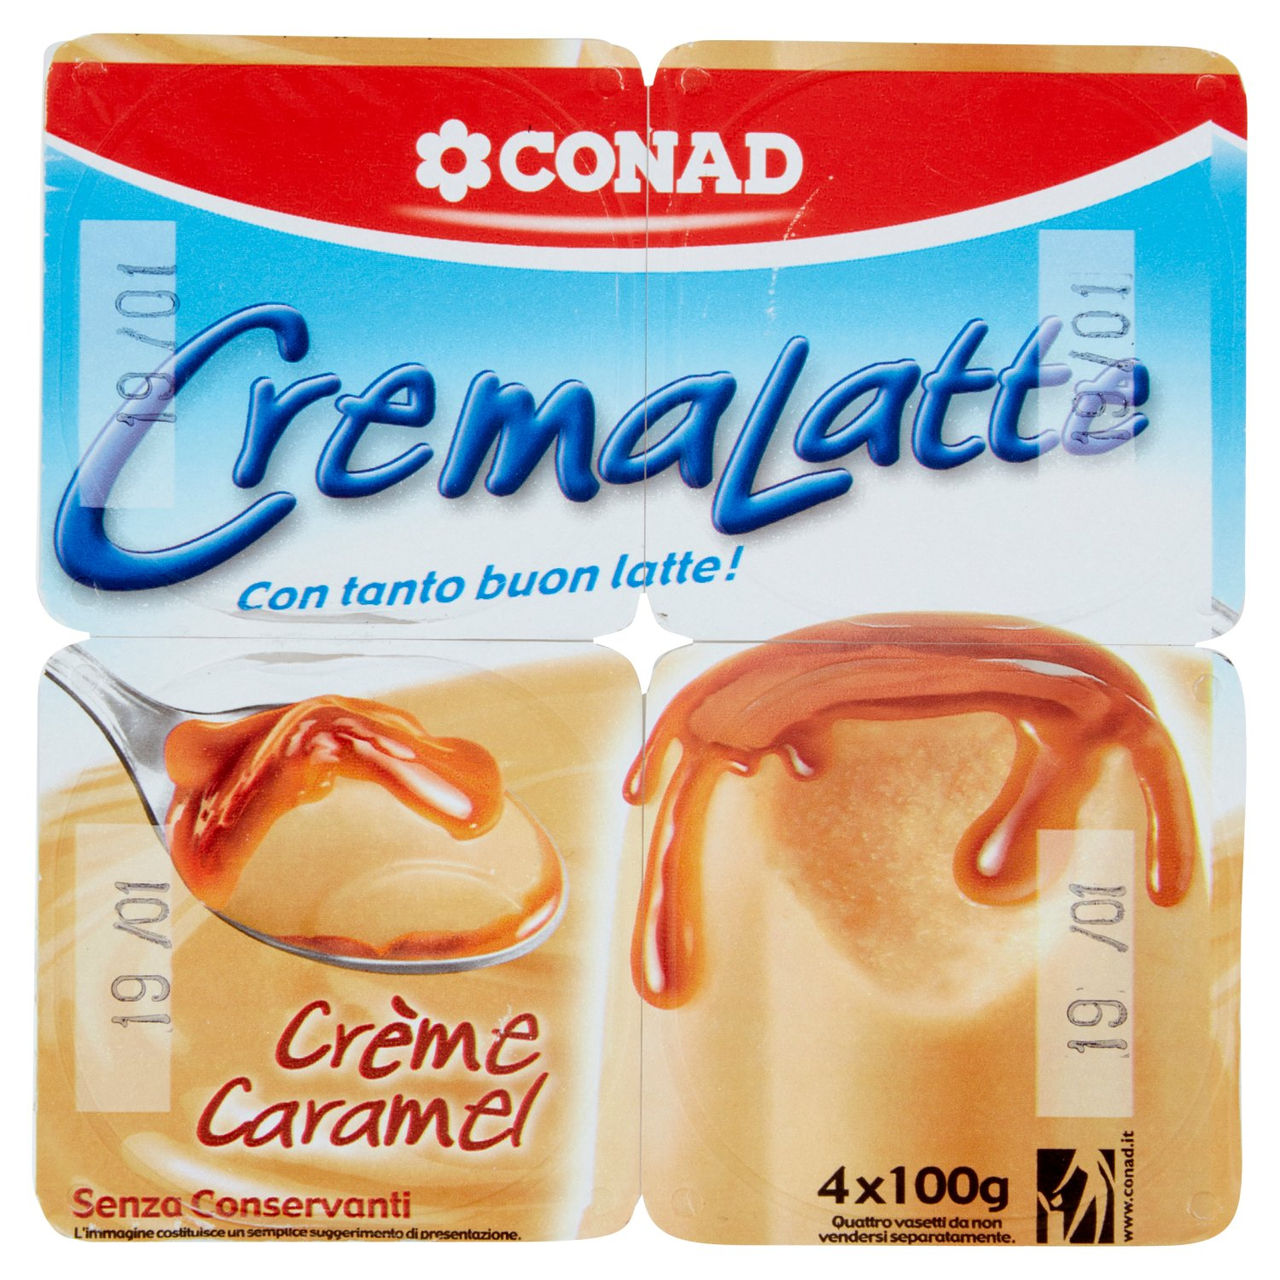 CremaLatte Crème Caramel 4 x 100 g Conad